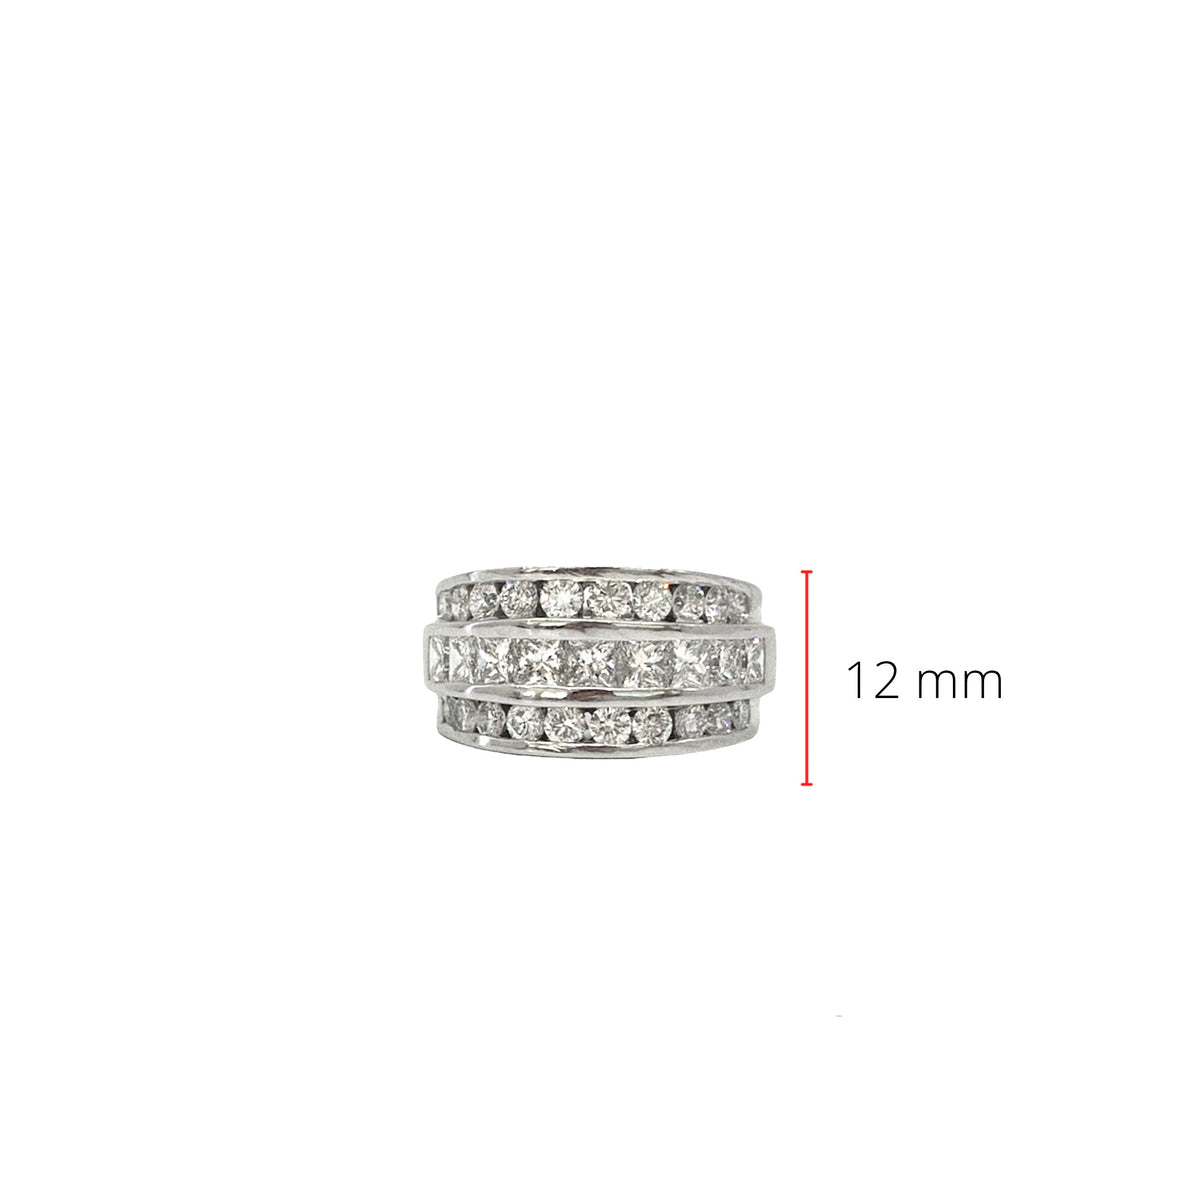 14K White Gold 2.20cttw Diamond Ring - Size 6.5